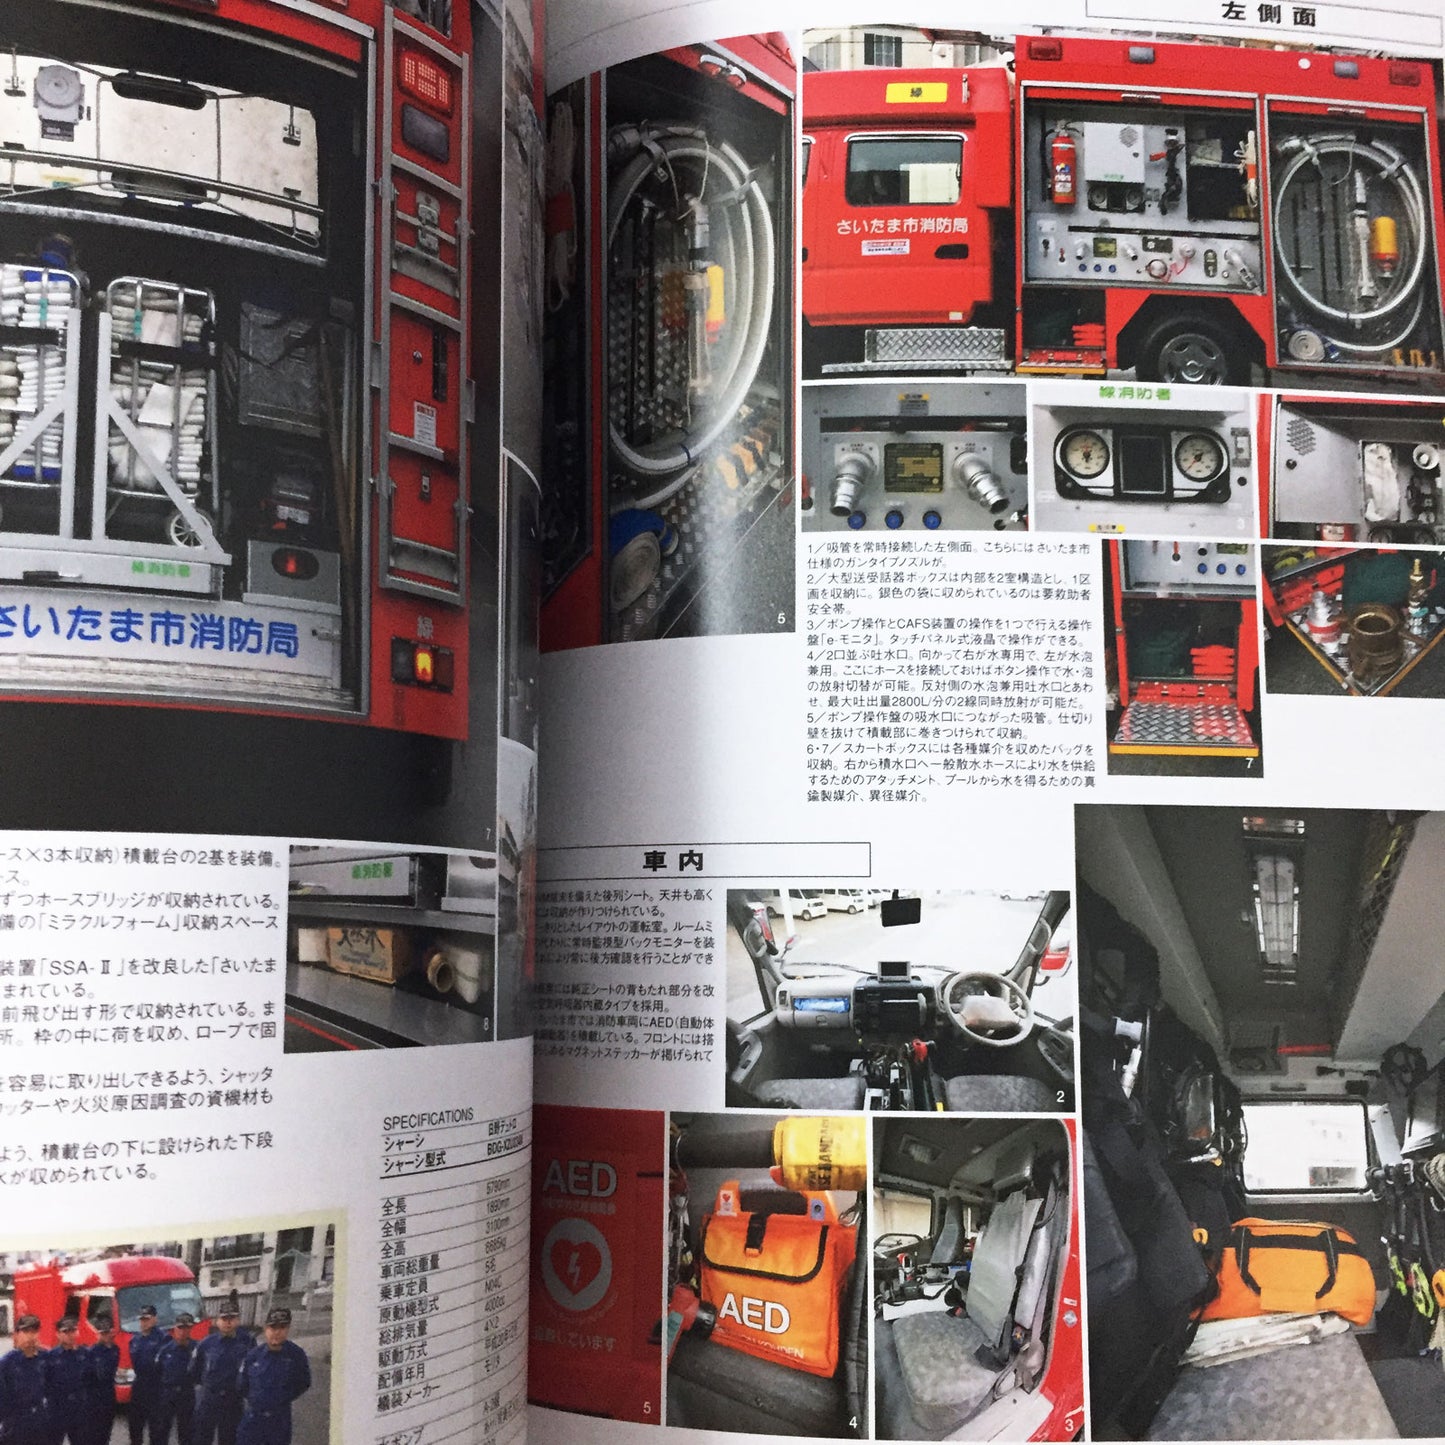 Japanese Fire Truck 2010